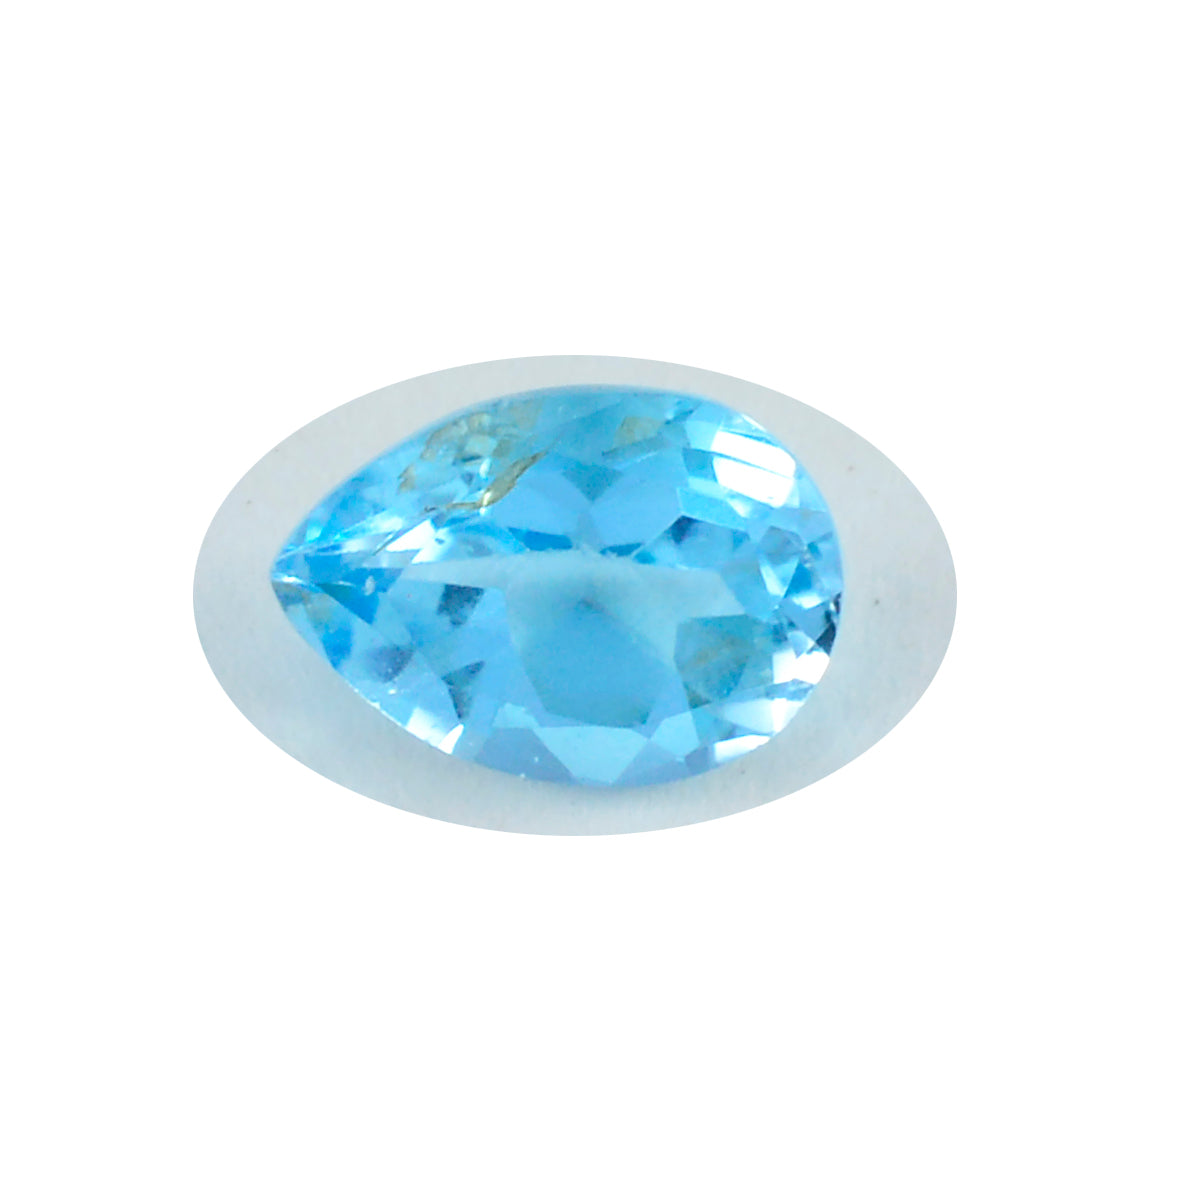 riyogems 1 st äkta blå topas fasetterad 7x10 mm päronform lös sten av häpnadsväckande kvalitet